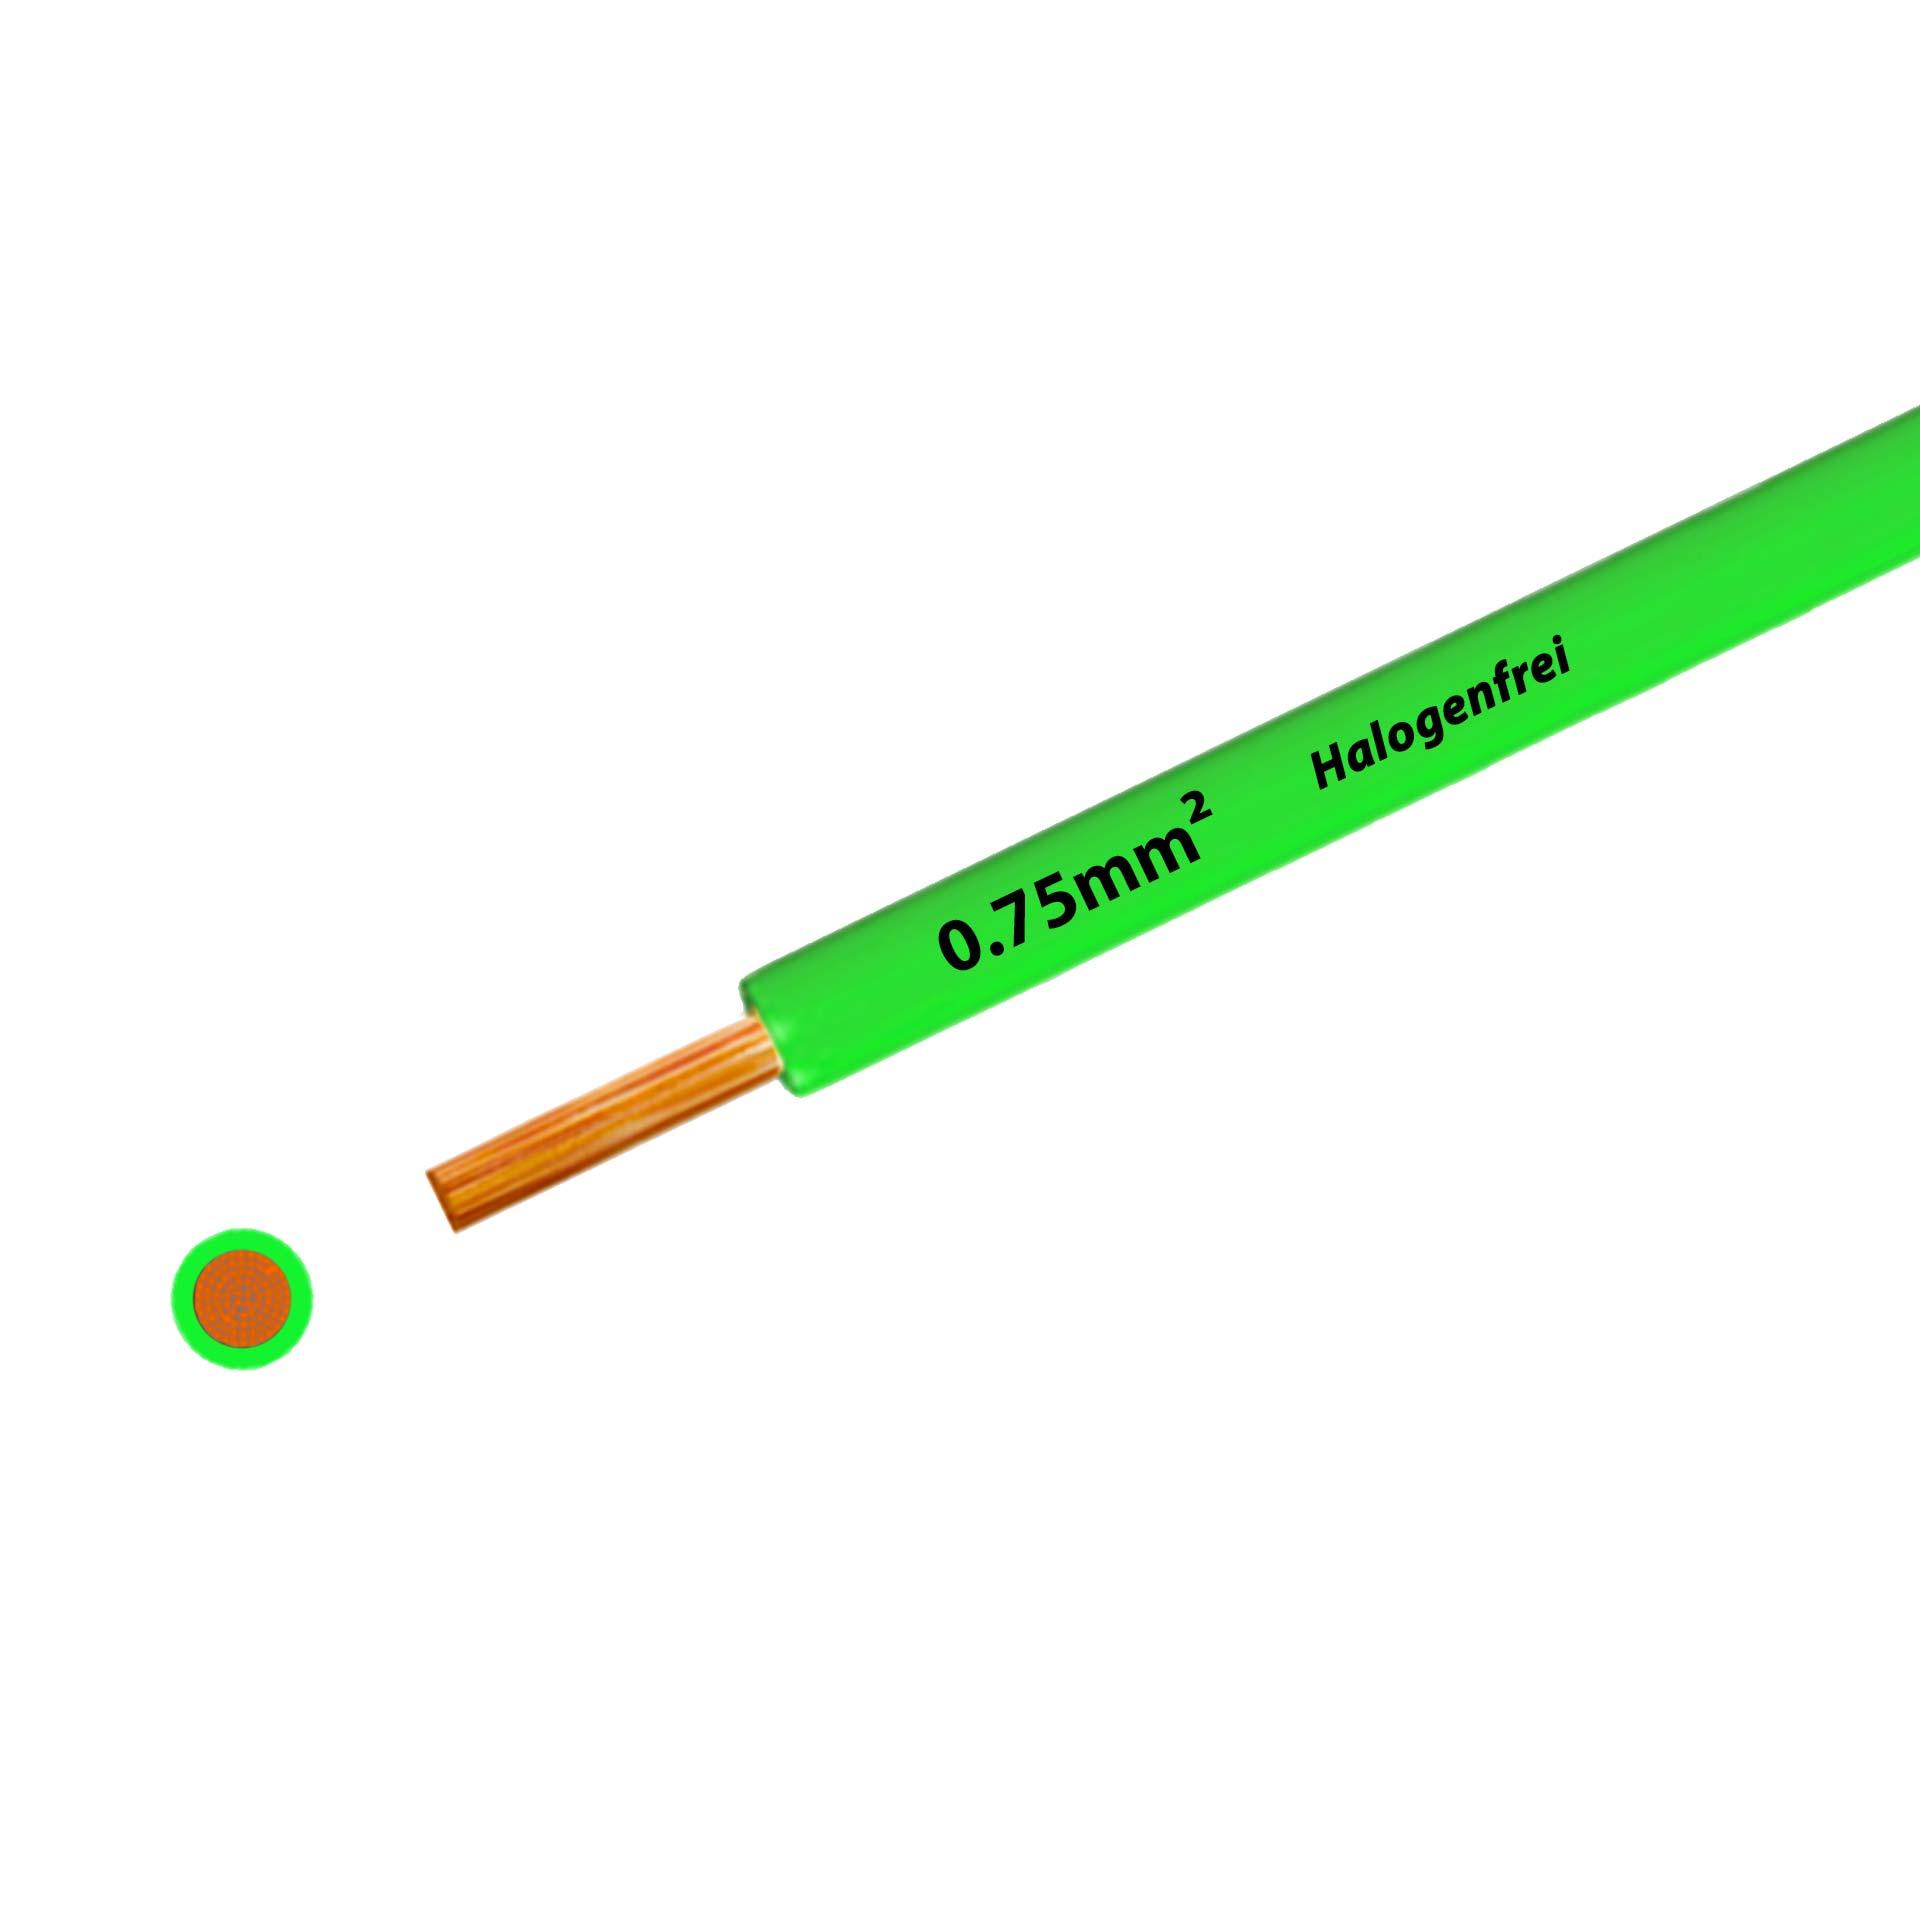 Litze halogenfrei 90° C , 500V, 0.75mm2, grün (RAL 6018), auf Kunststoffrolle